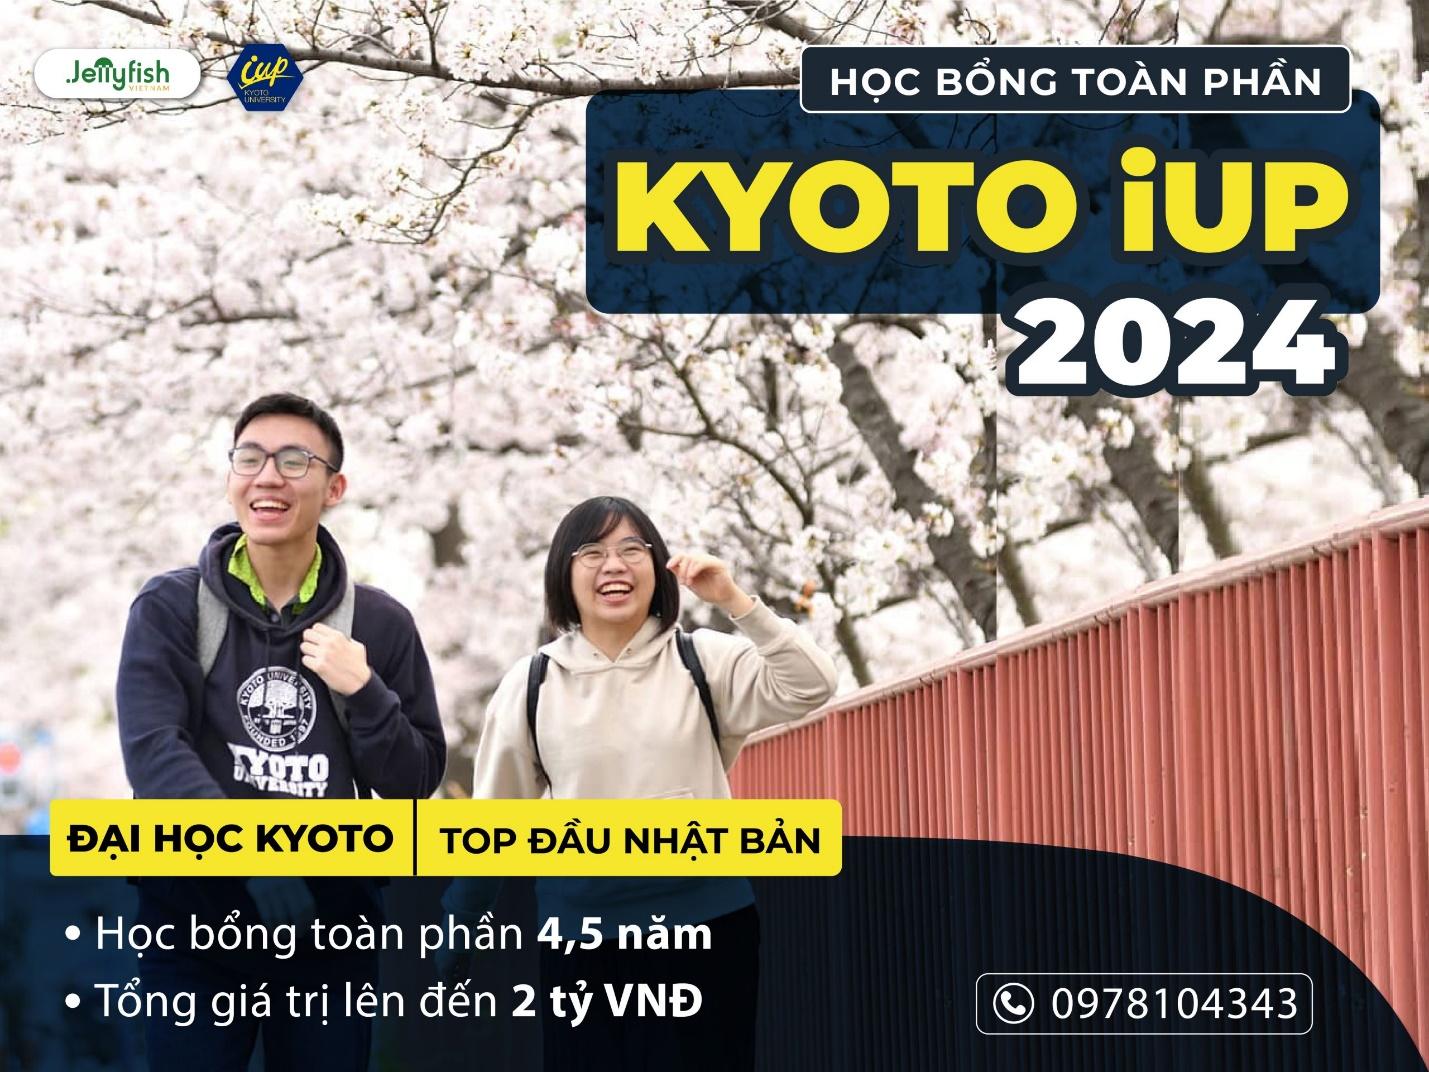 Học sinh ưu tú nhận học bổng toàn phần Kyoto iUP từ đại học hàng đầu Nhật Bản: Khởi đầu hành trình học tập đầy hứa hẹn - Ảnh 4.